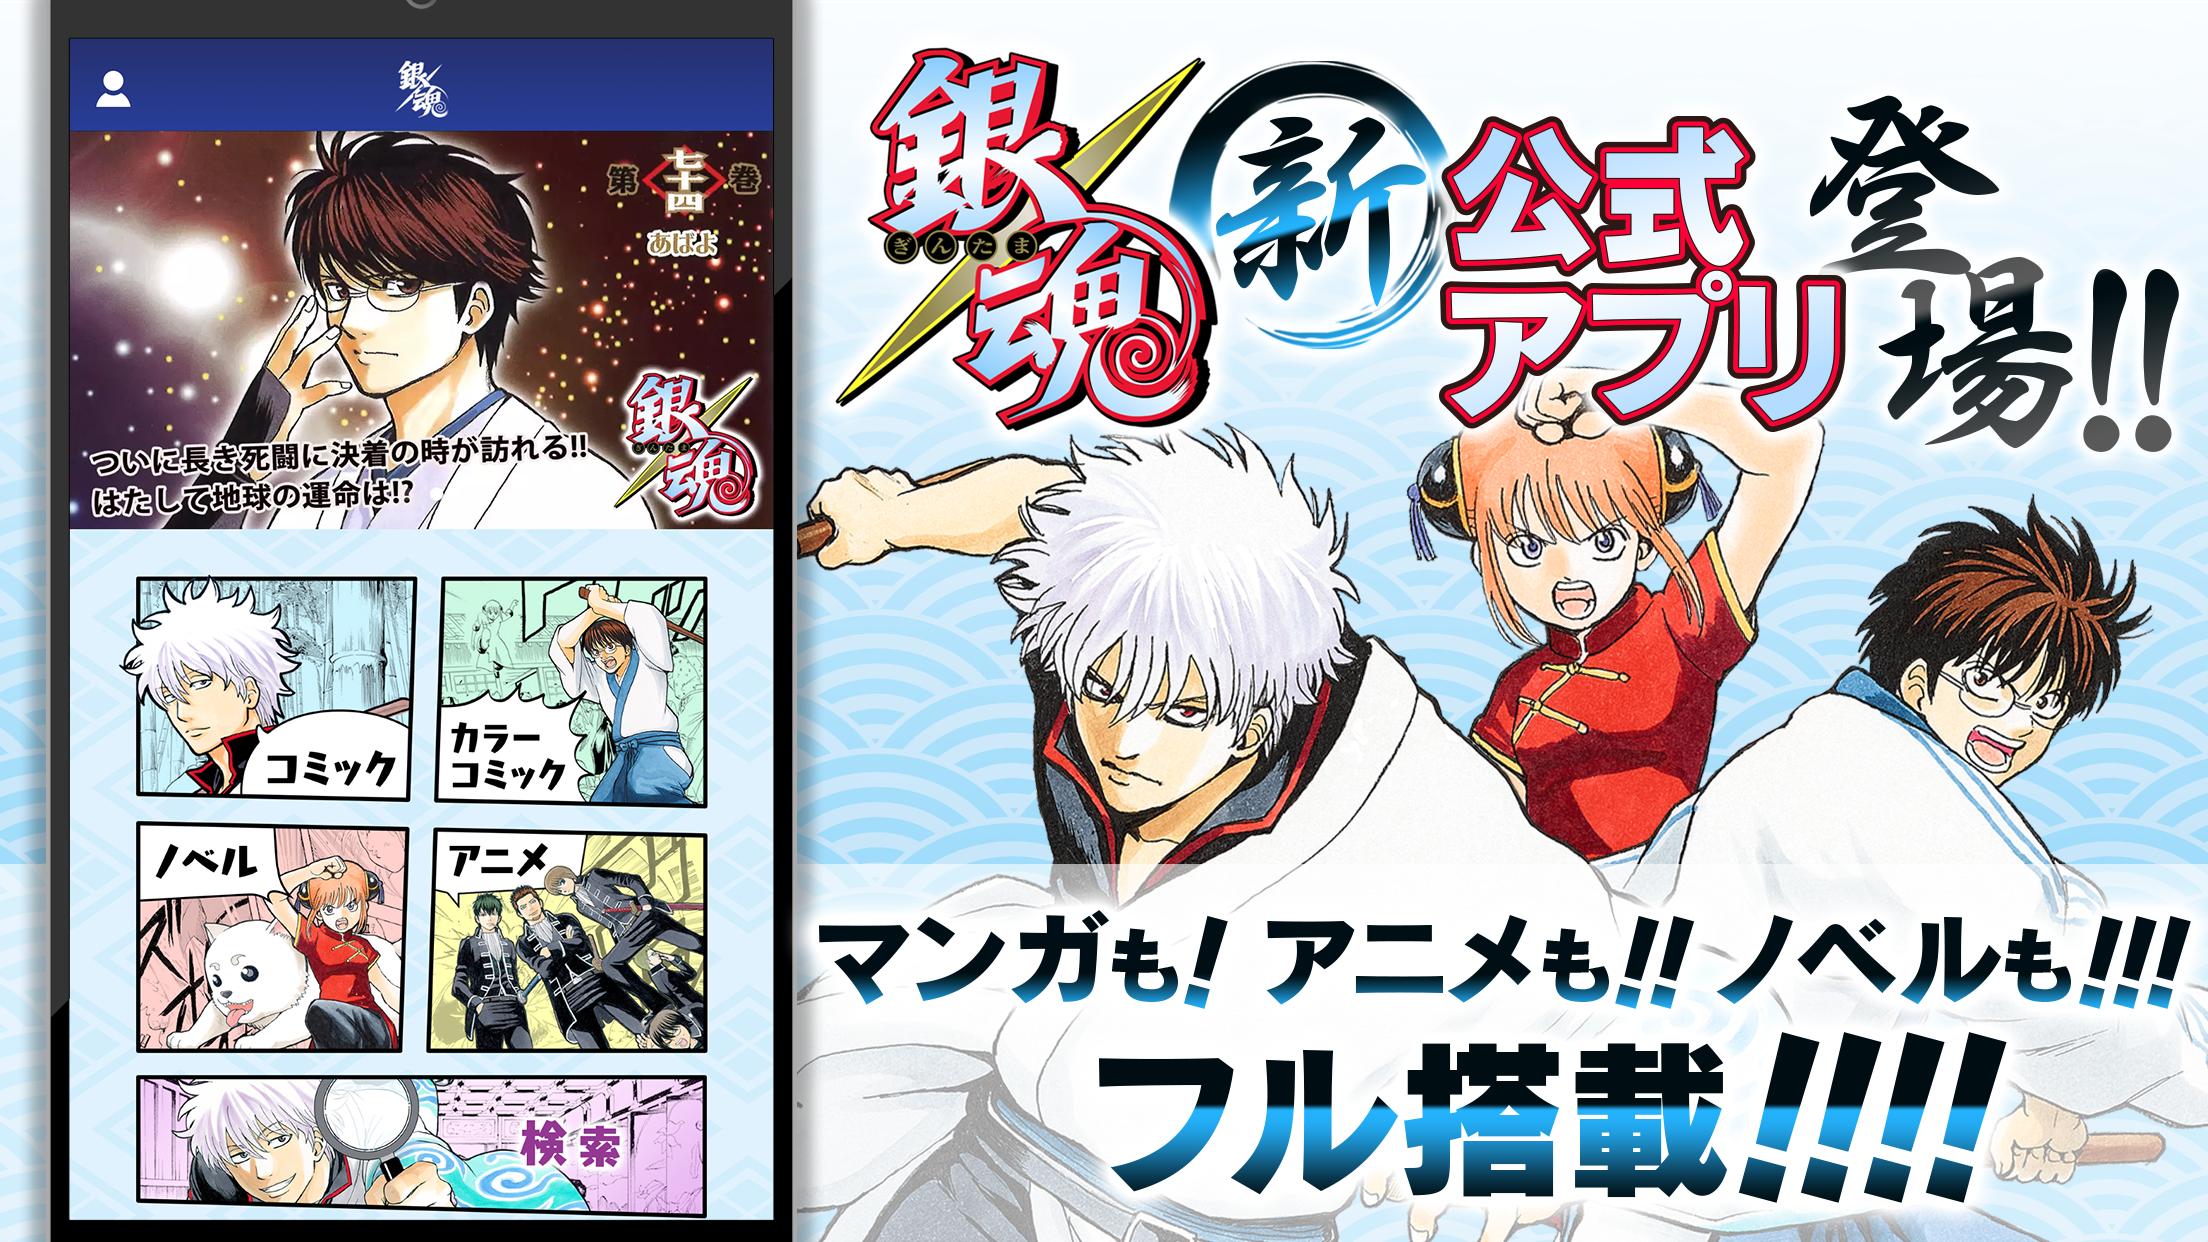 銀魂公式アプリ コミックもアニメもノベルも全部楽しめるってマジかァァァ For Android Apk Download